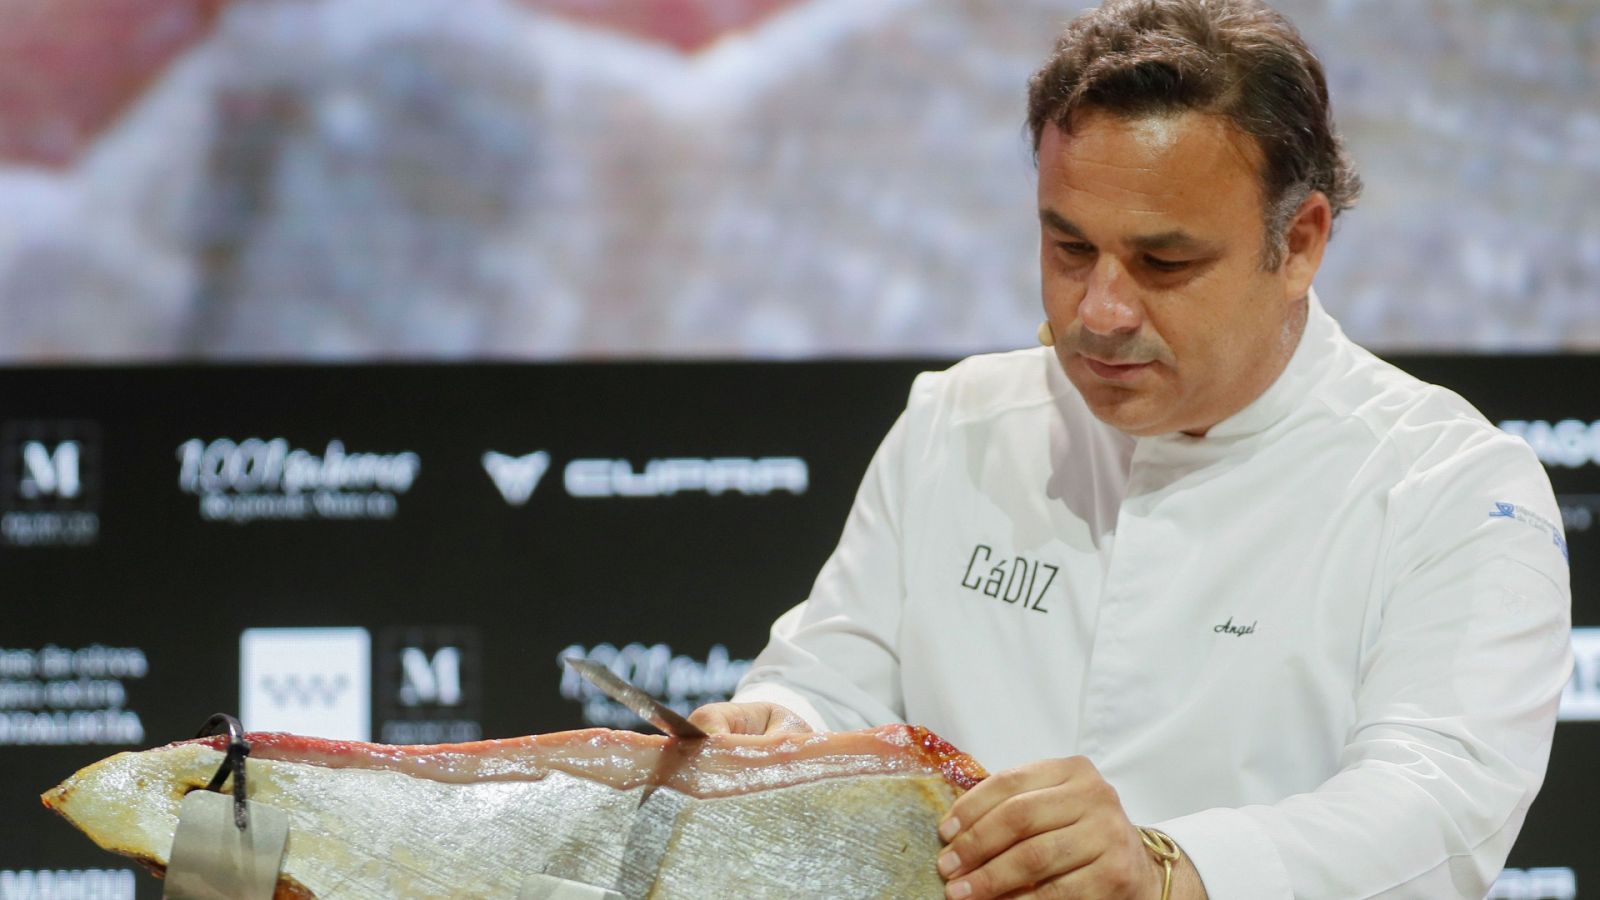 Ángel León corta su jamón del mar, hecho con atún de almadraba